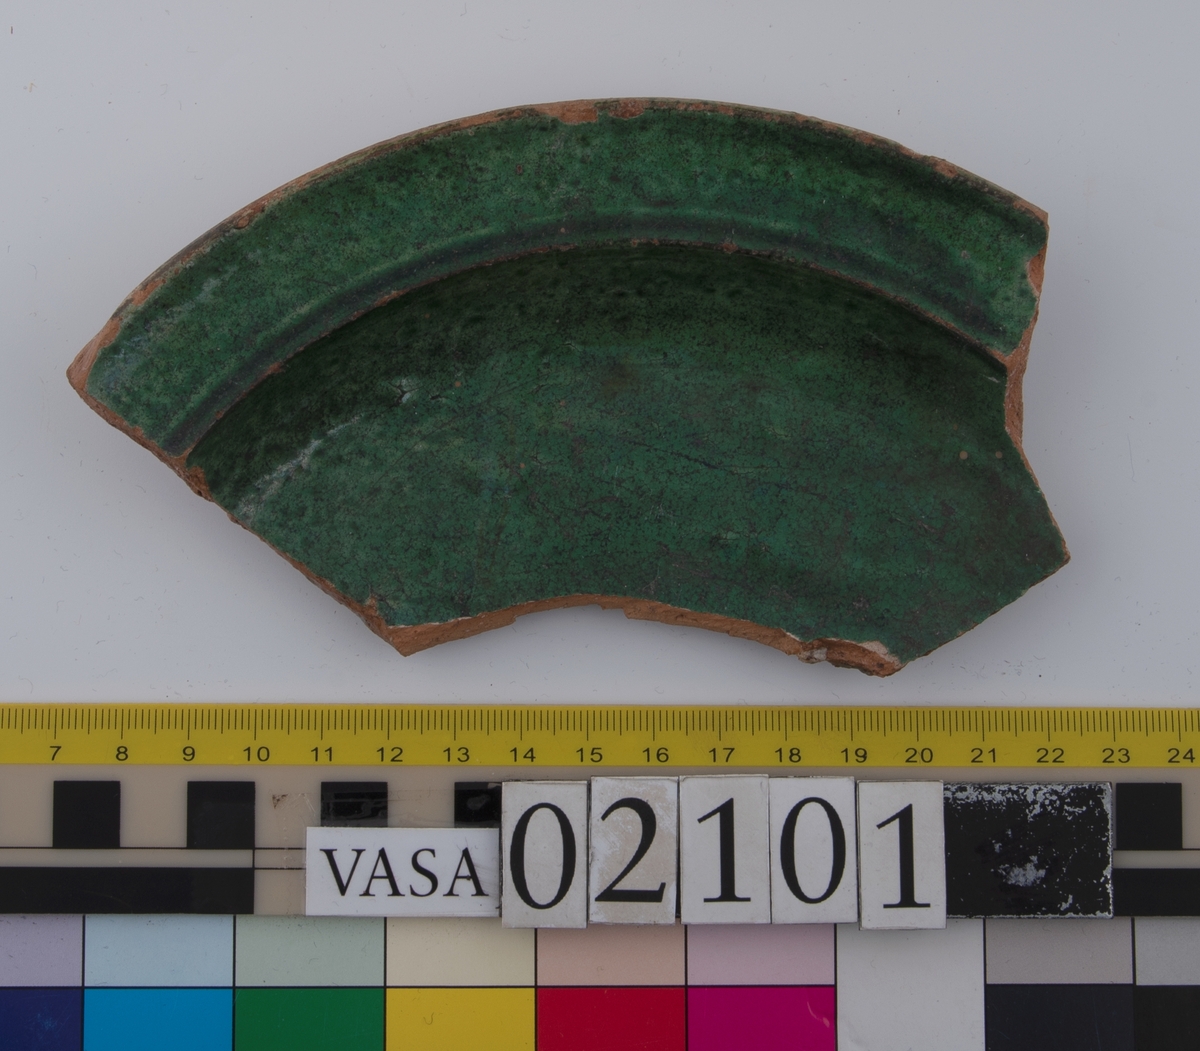 Två skärvor från ett grönglaserat keramikfat.
Fragment av mynningsrand (bräm) med bit av plan botten av fat. Profilerad bräm. Insida blyglaserad grön. Utsida oglaserad. Undersidan av den platta botten är räfflad.